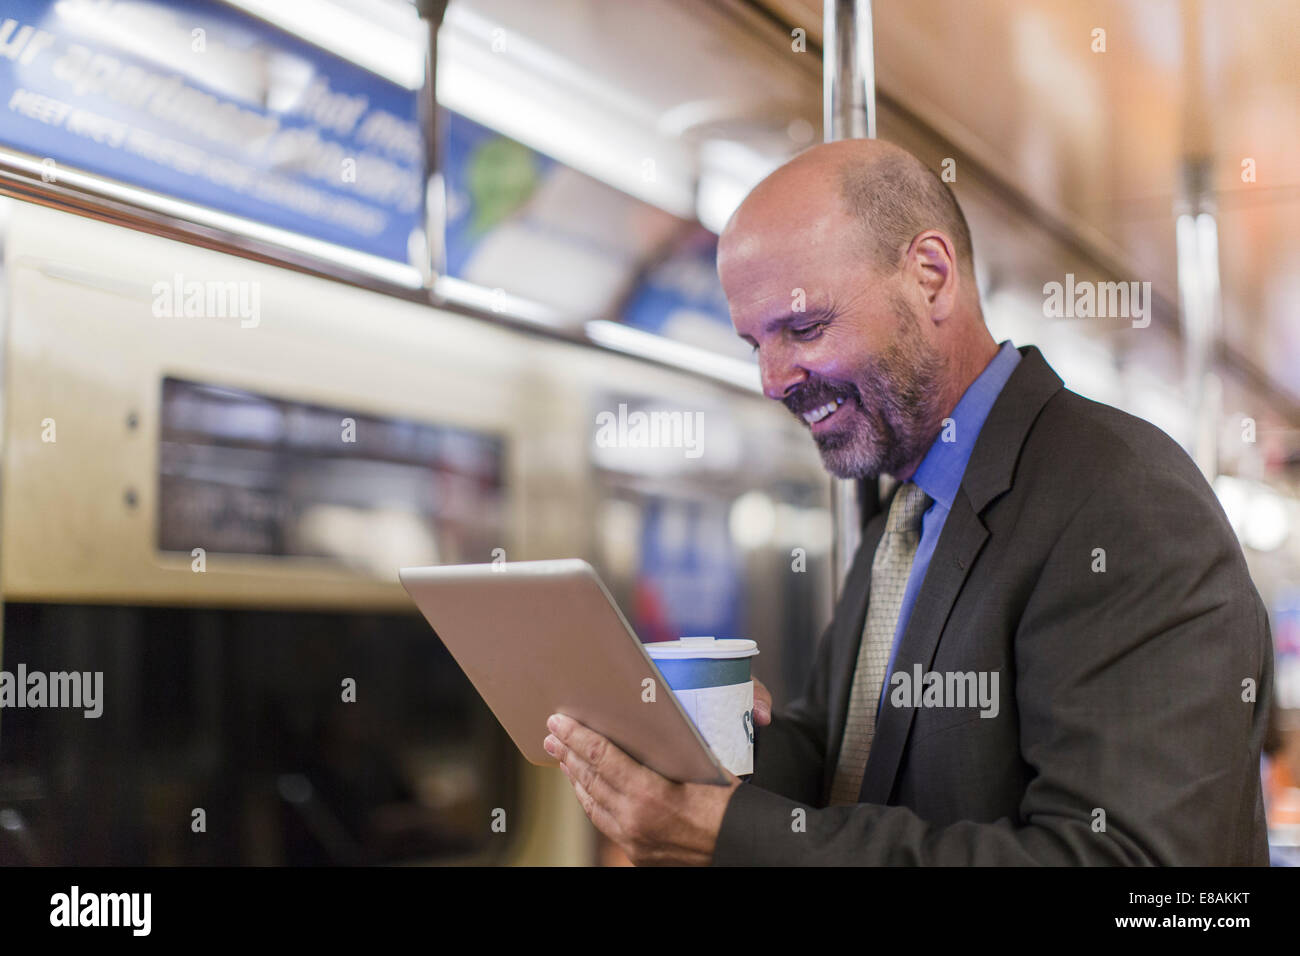 Uomo maturo sul treno della metropolitana holding tavoletta digitale Foto Stock